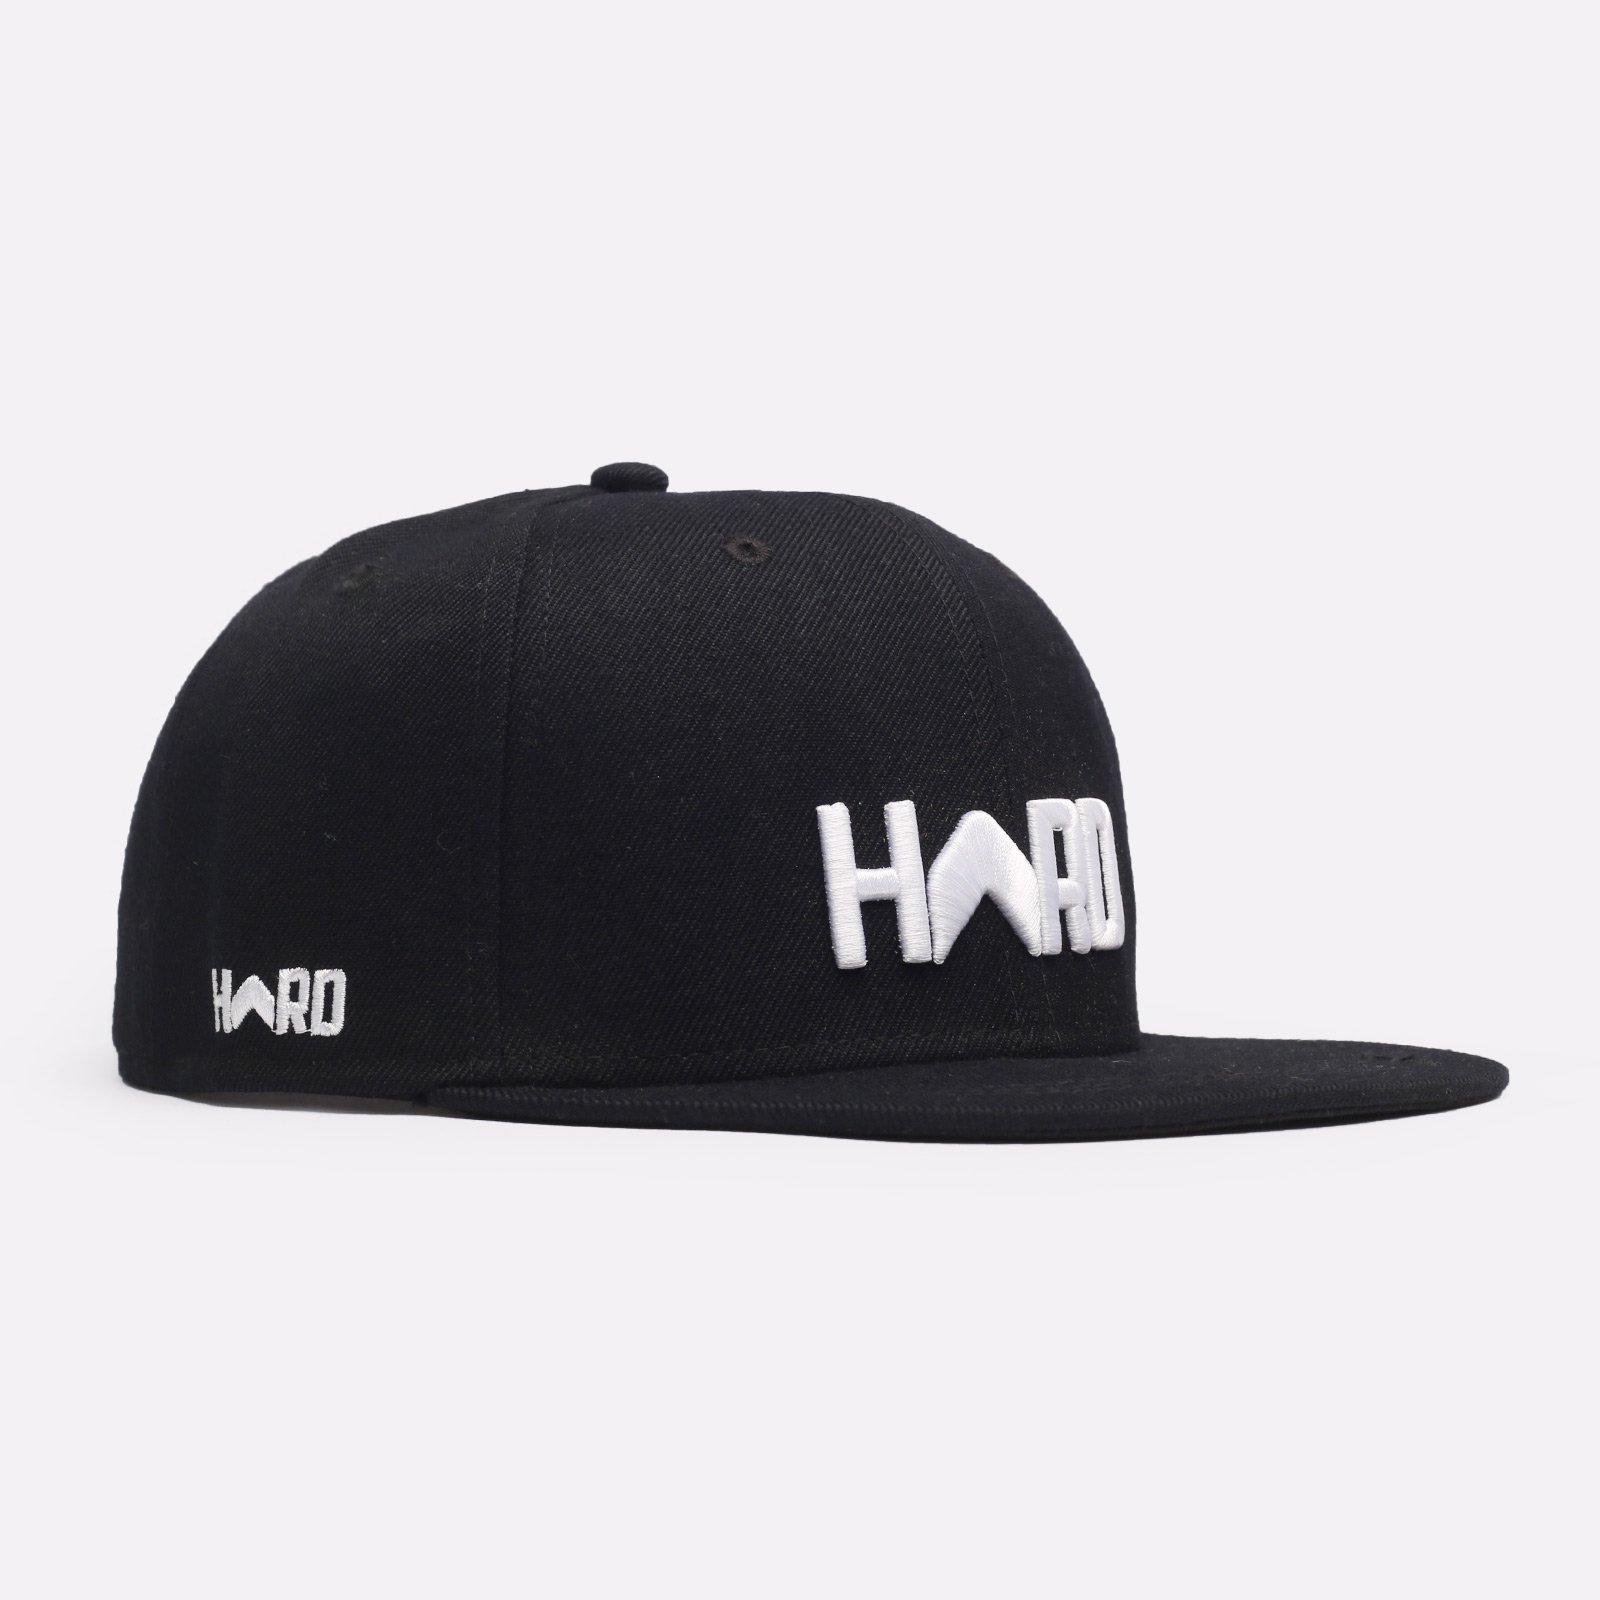 мужская кепка Hard Logo Snapback  (Hard black/wht-0106)  - цена, описание, фото 1